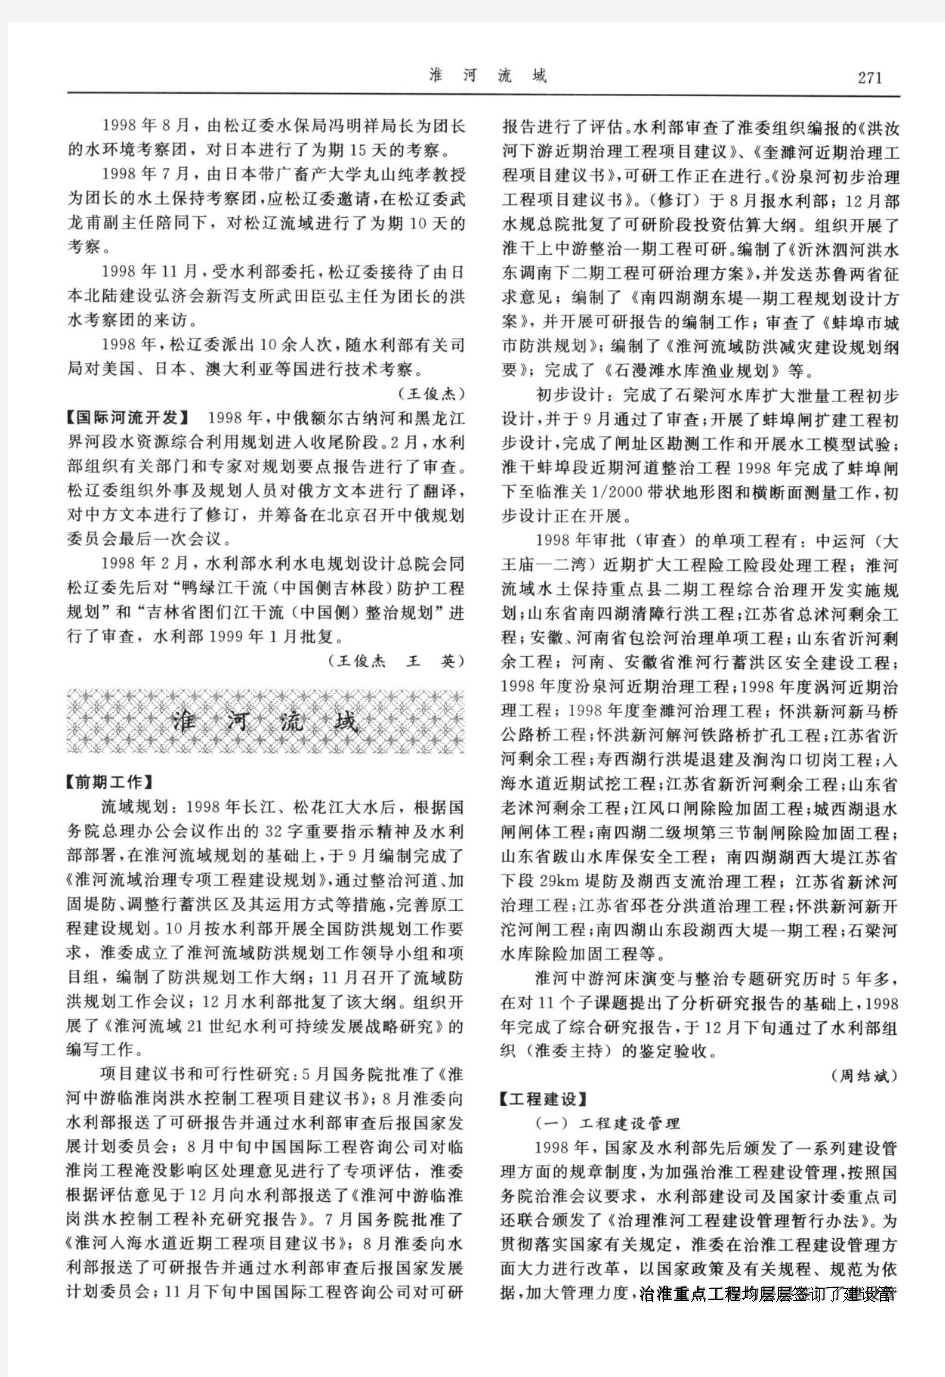 中国水利年鉴1999_江河治理与开发-松花江、辽河流域-国际河流开发